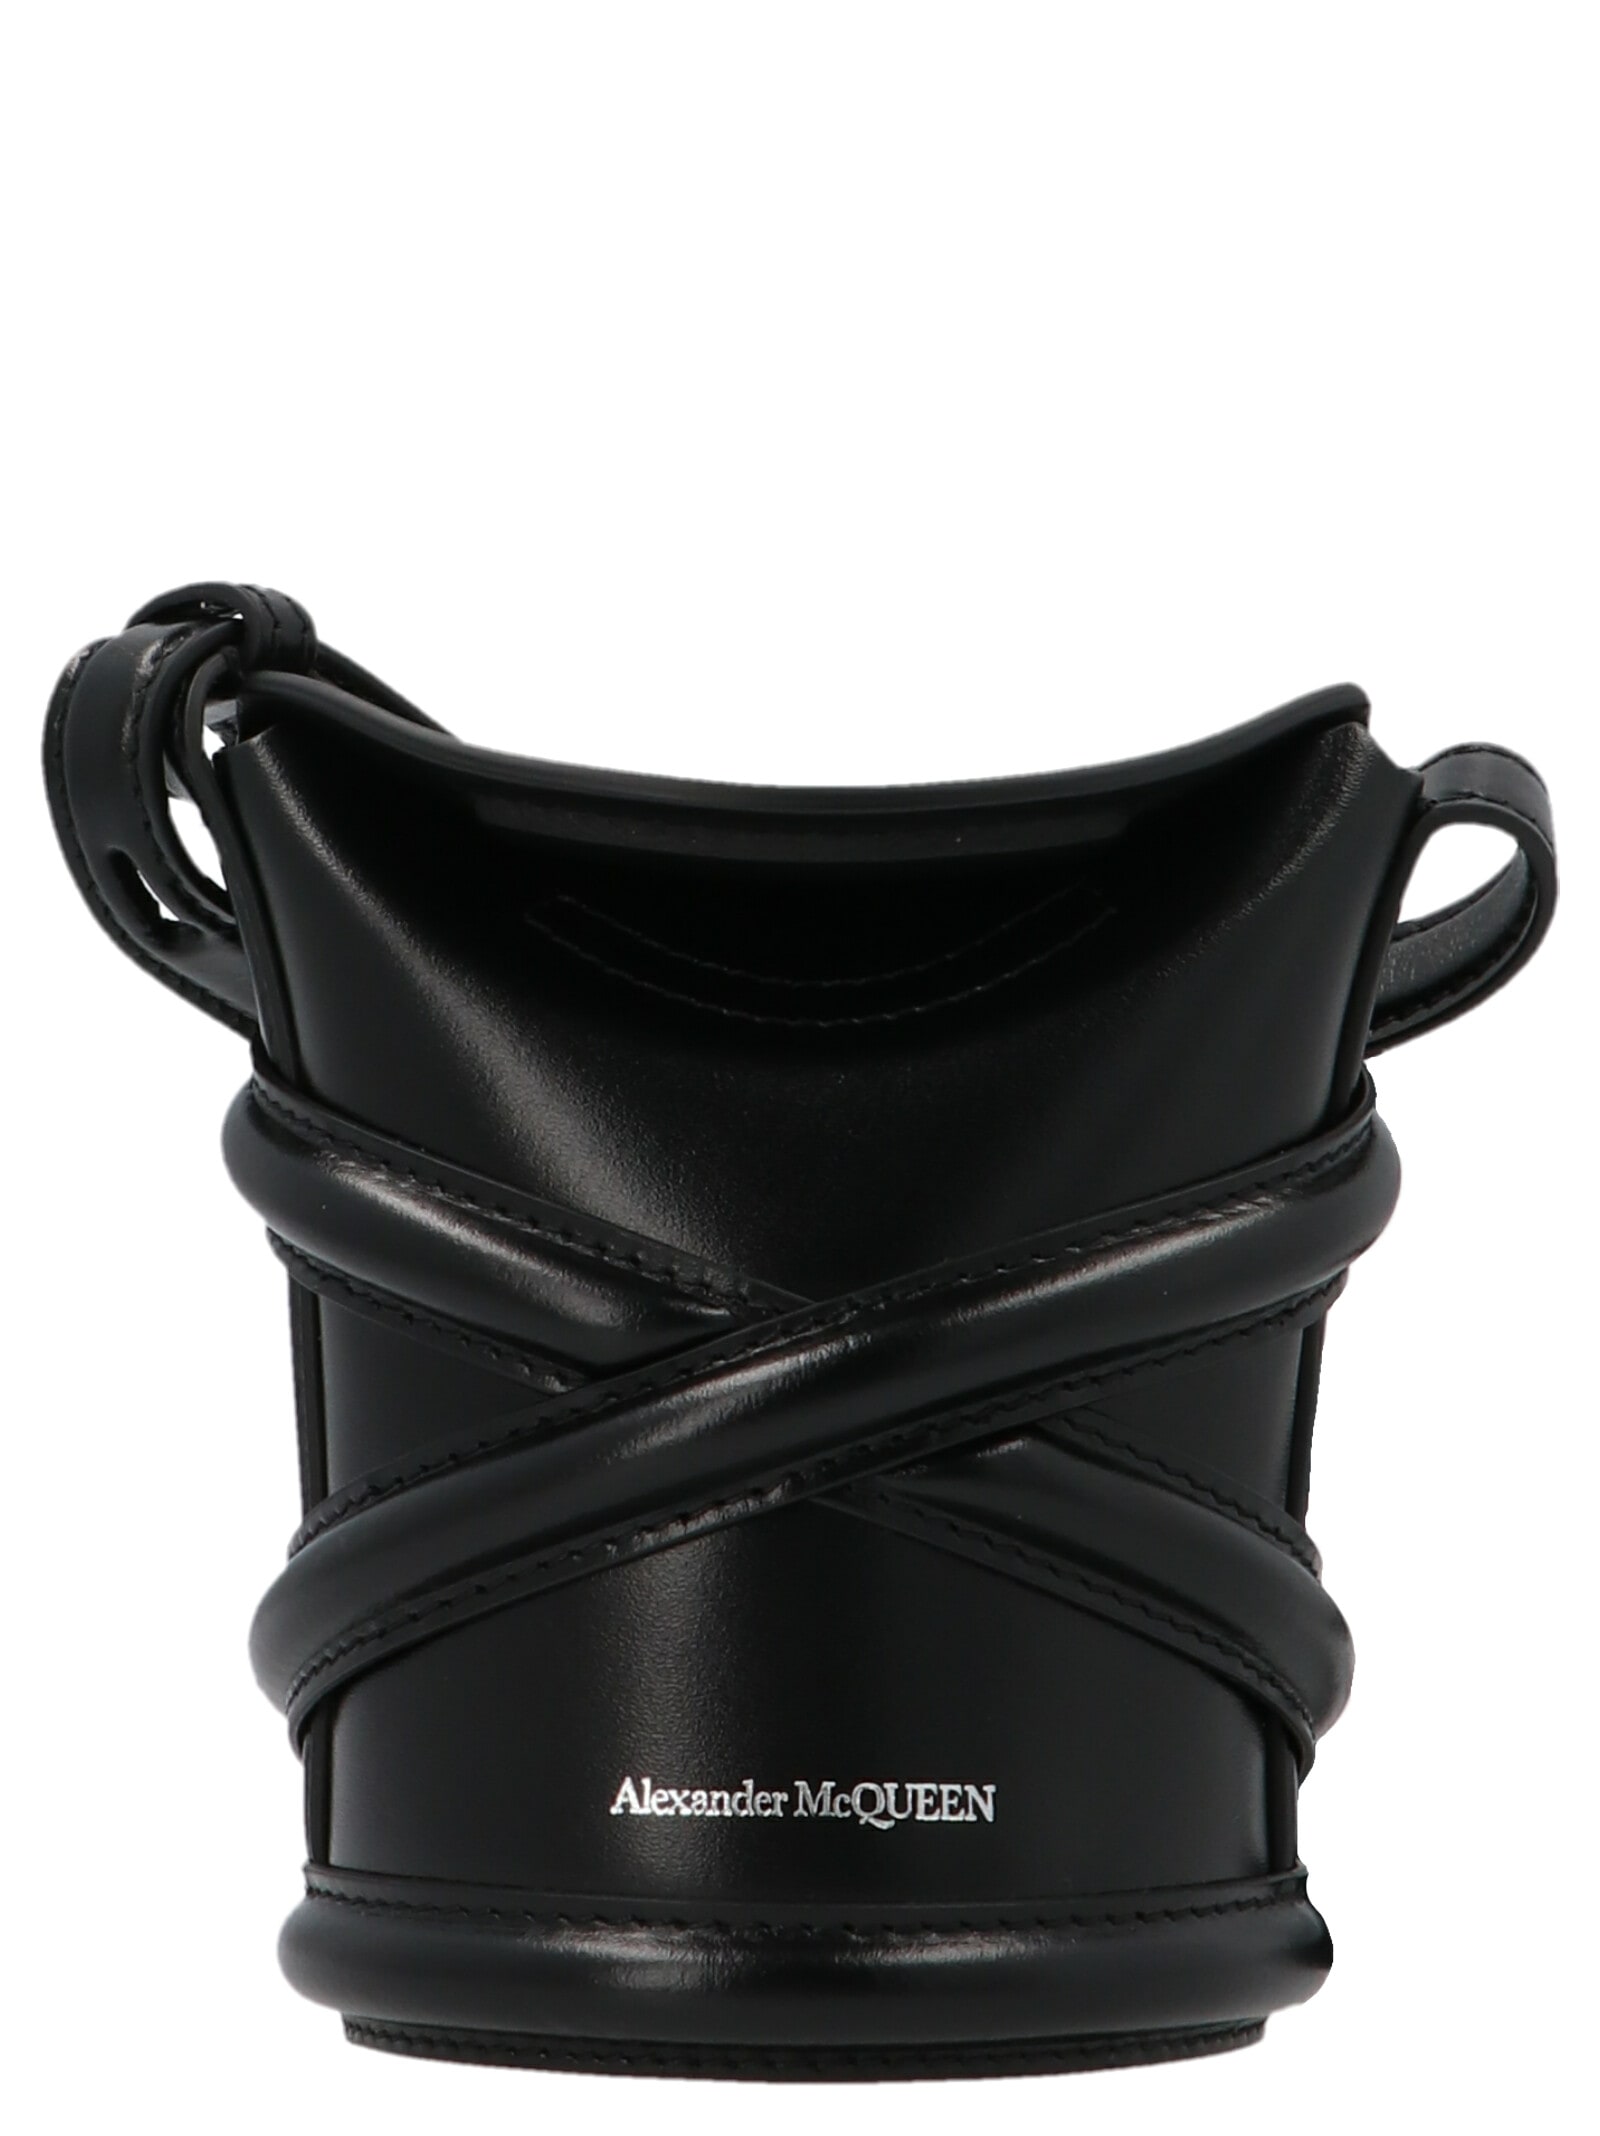 Alexander McQueen the Curve Mini Crossbody Bag